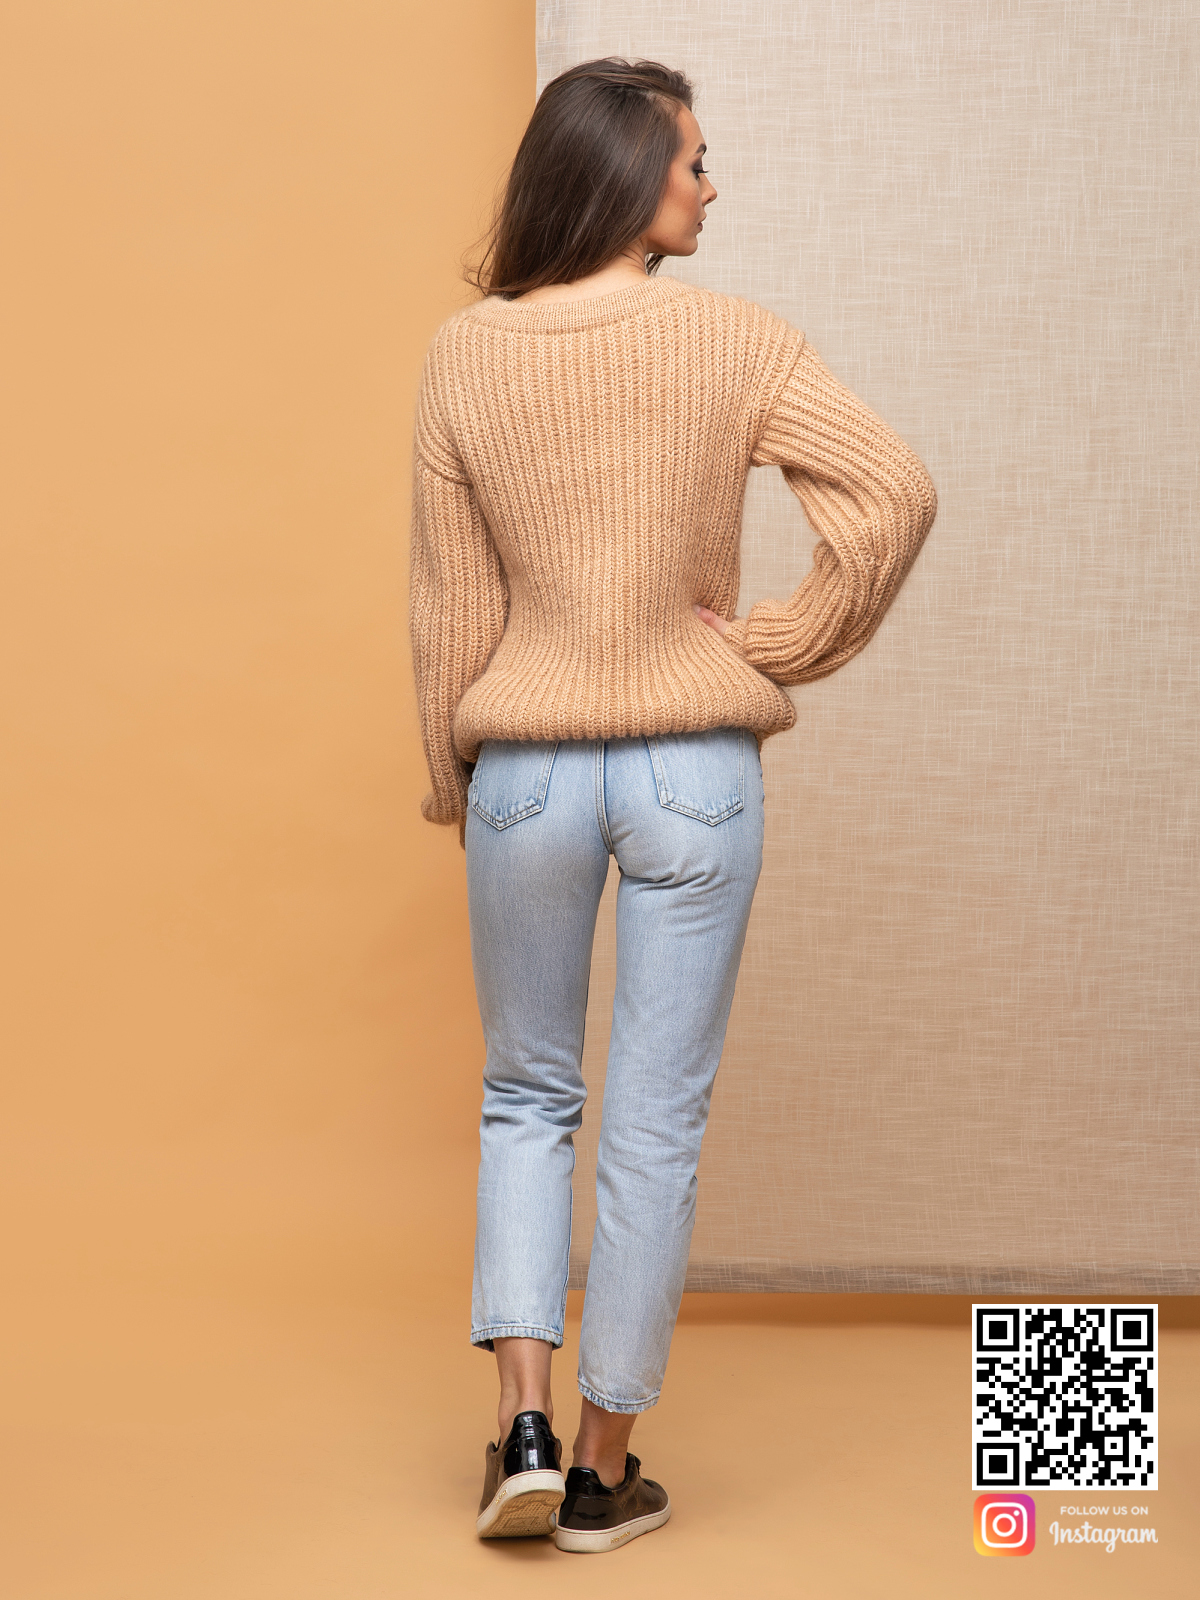 На второй фотографии бежевый свитер женский со спины от Shapar, бренда вязаной одежды ручной работы в интернет-магазине связанных спицами вещей.